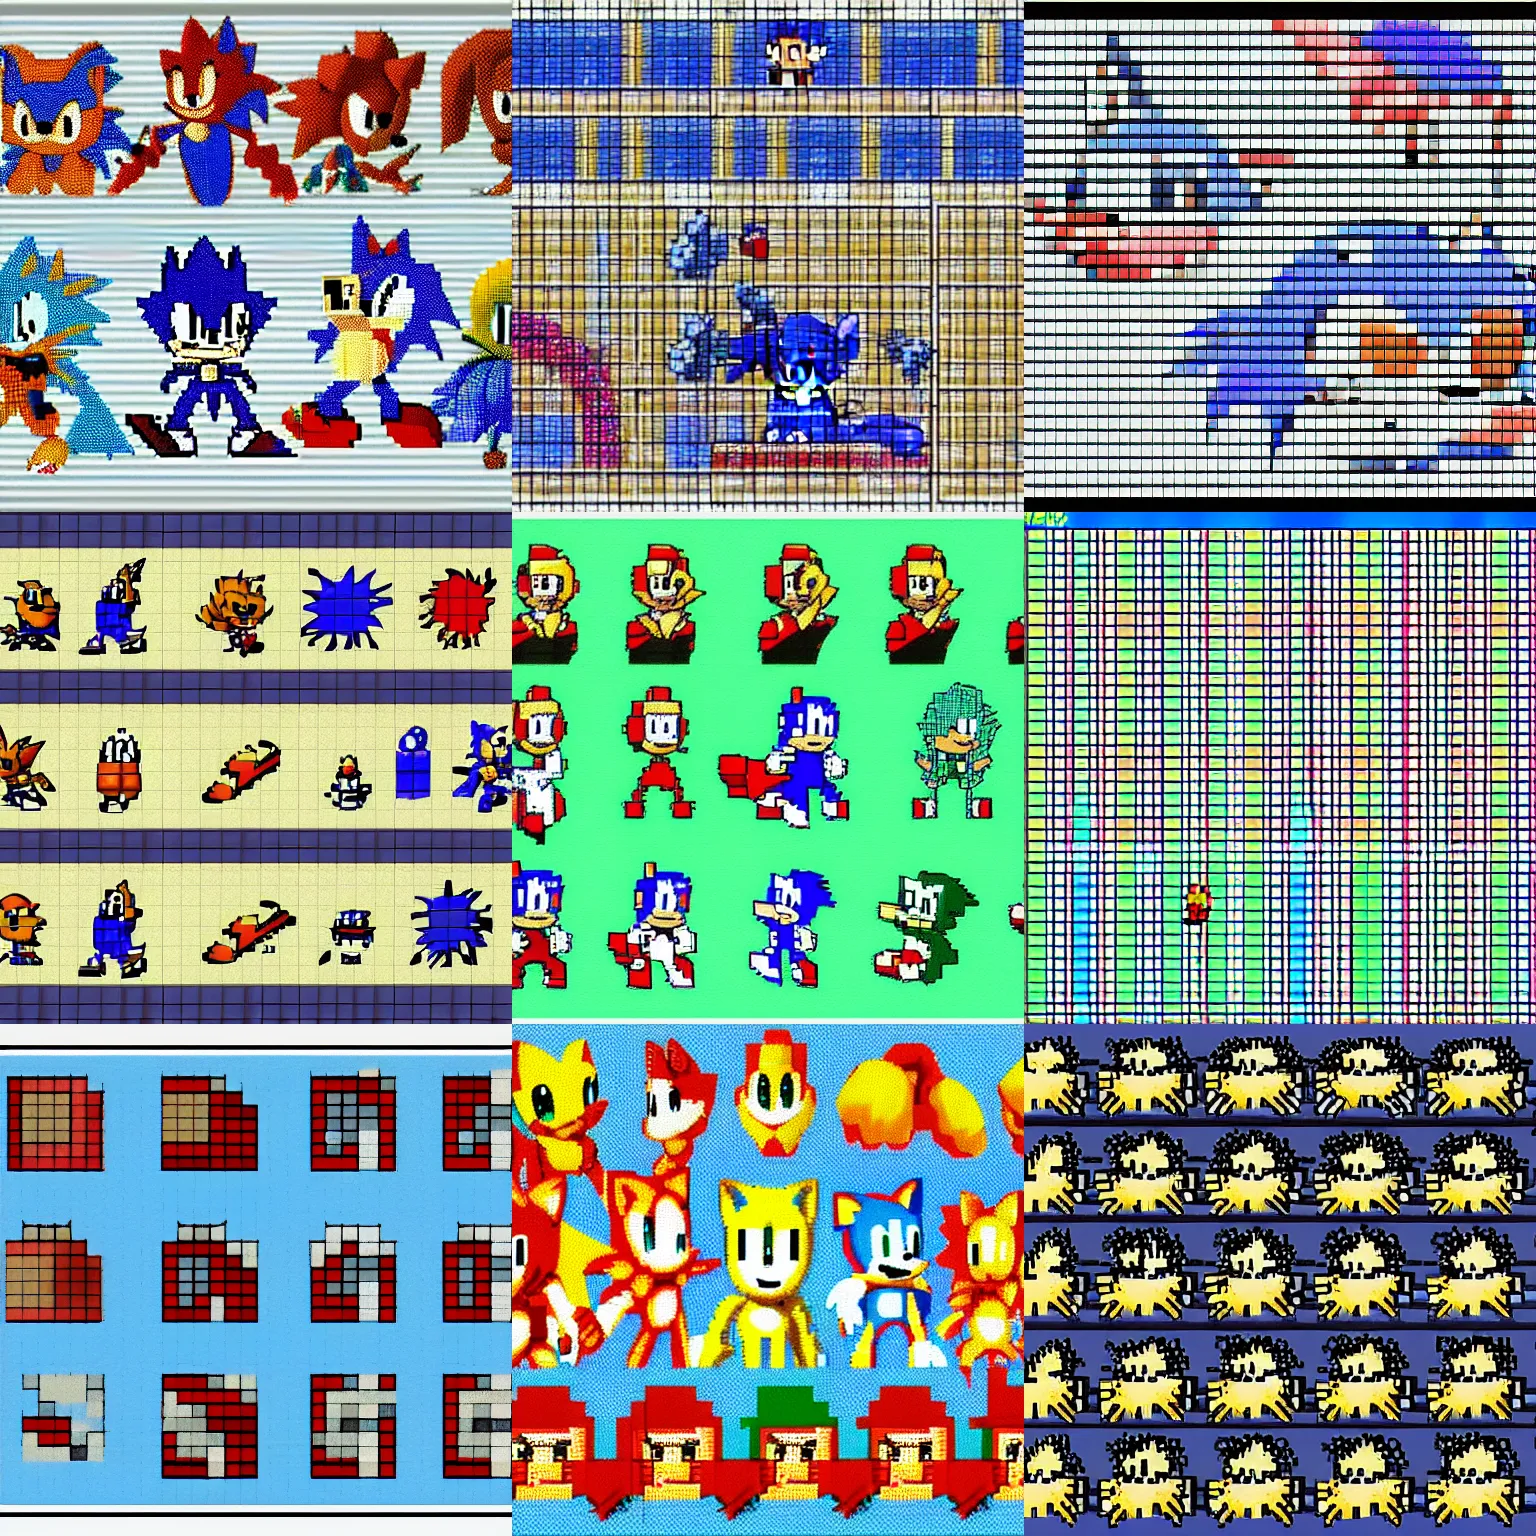 Sonic Art Resources — sonichedgeblog: All of Sonic's standard sprites